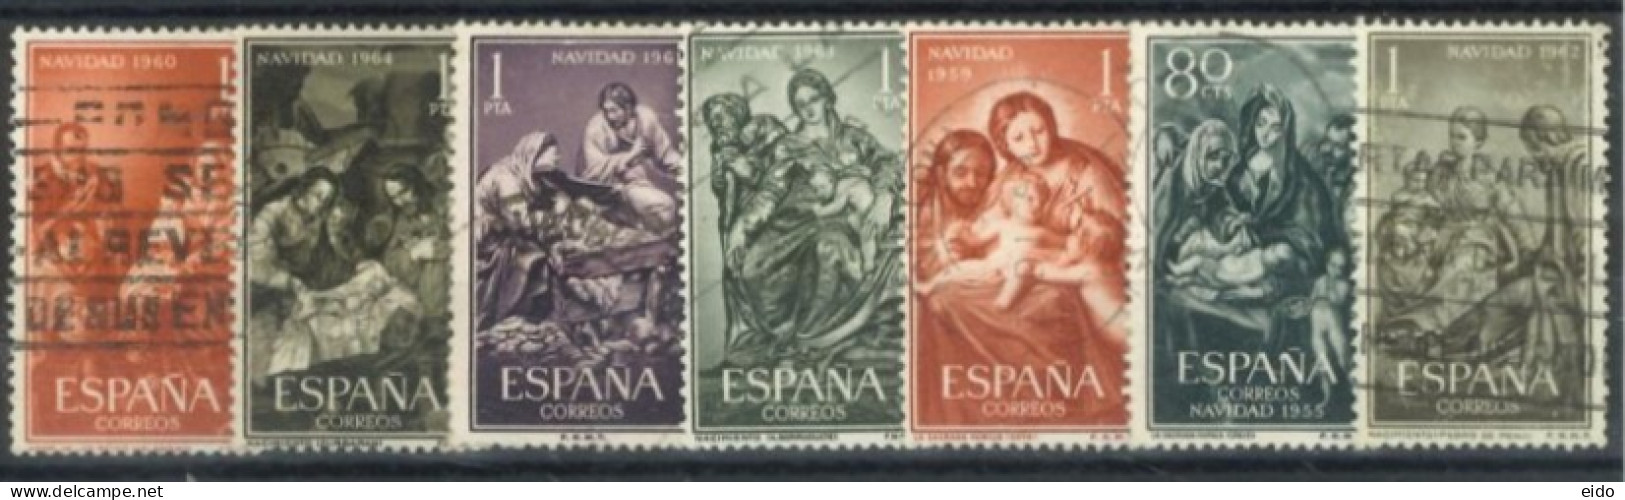 SPAIN, 1955/63, VIRGINS STAMPS SET OF 7, USED. - Gebruikt